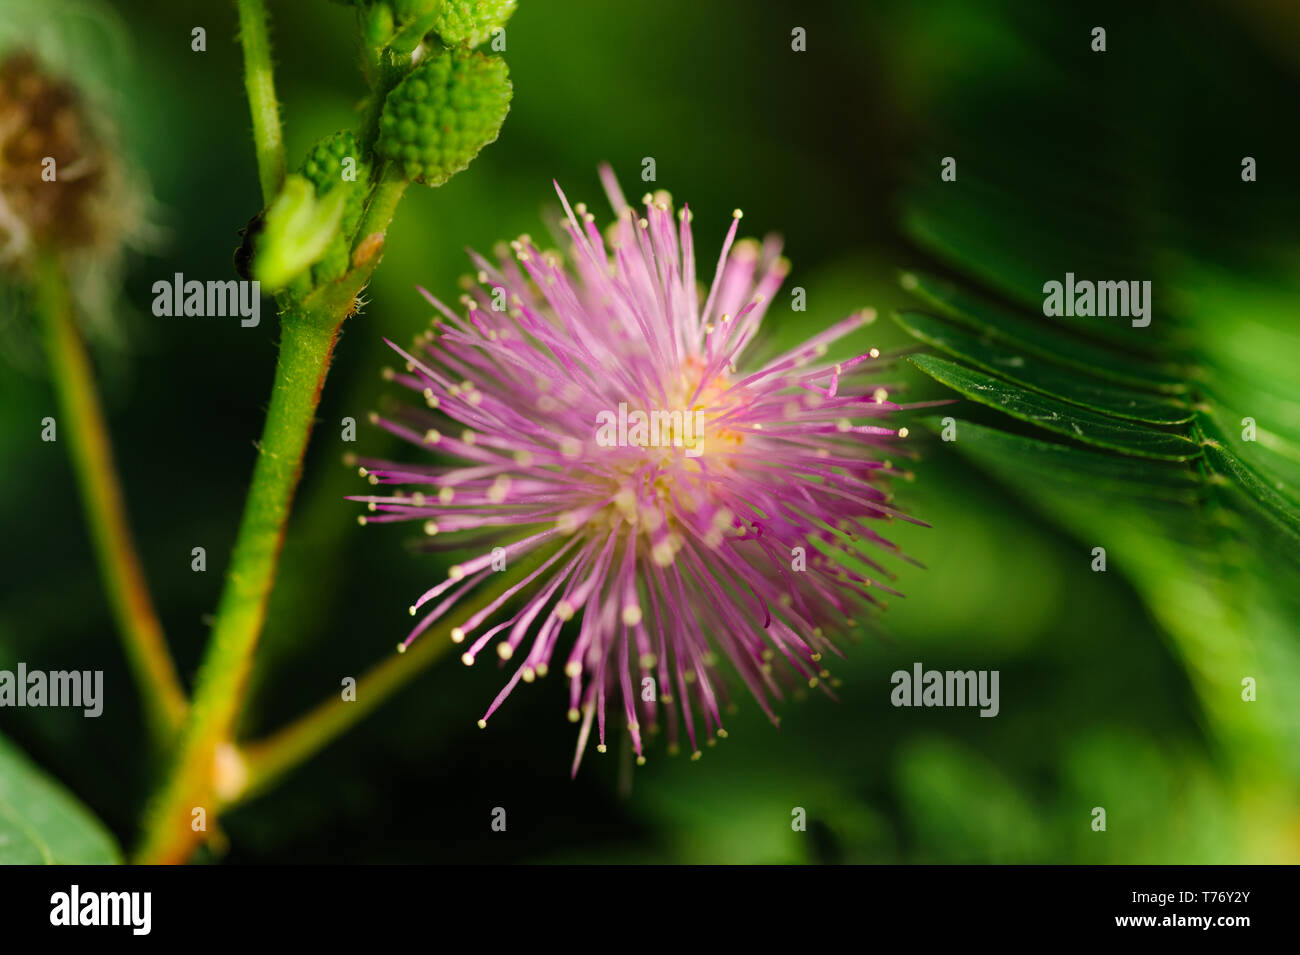 Chiudere l immagine del fiore mimosa isolata contro lo sfondo con sharp ricca colorfull e dettagli contrasty Foto Stock